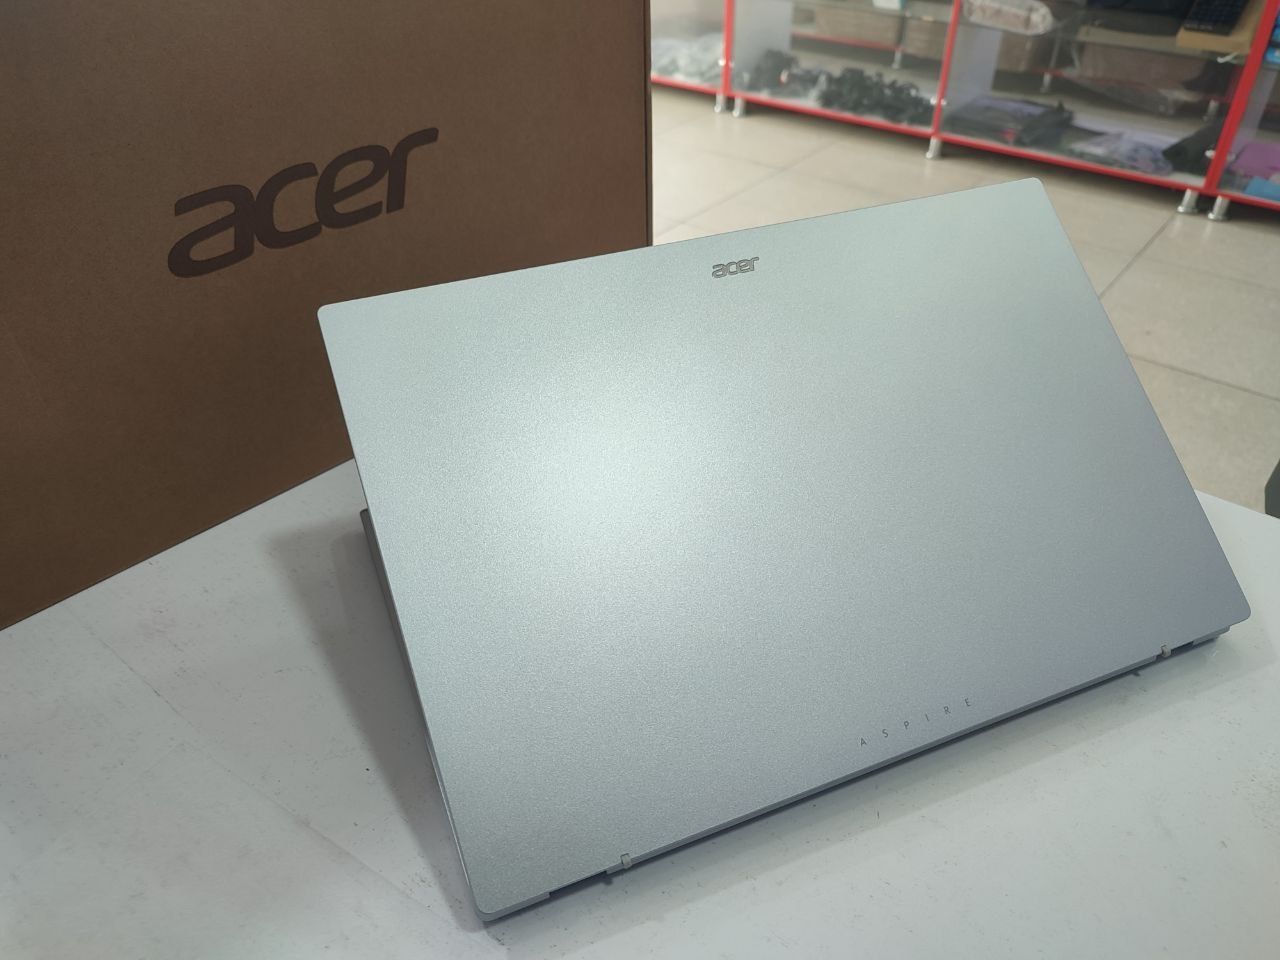 Acer core i3 13 avlod yangi noutbuk